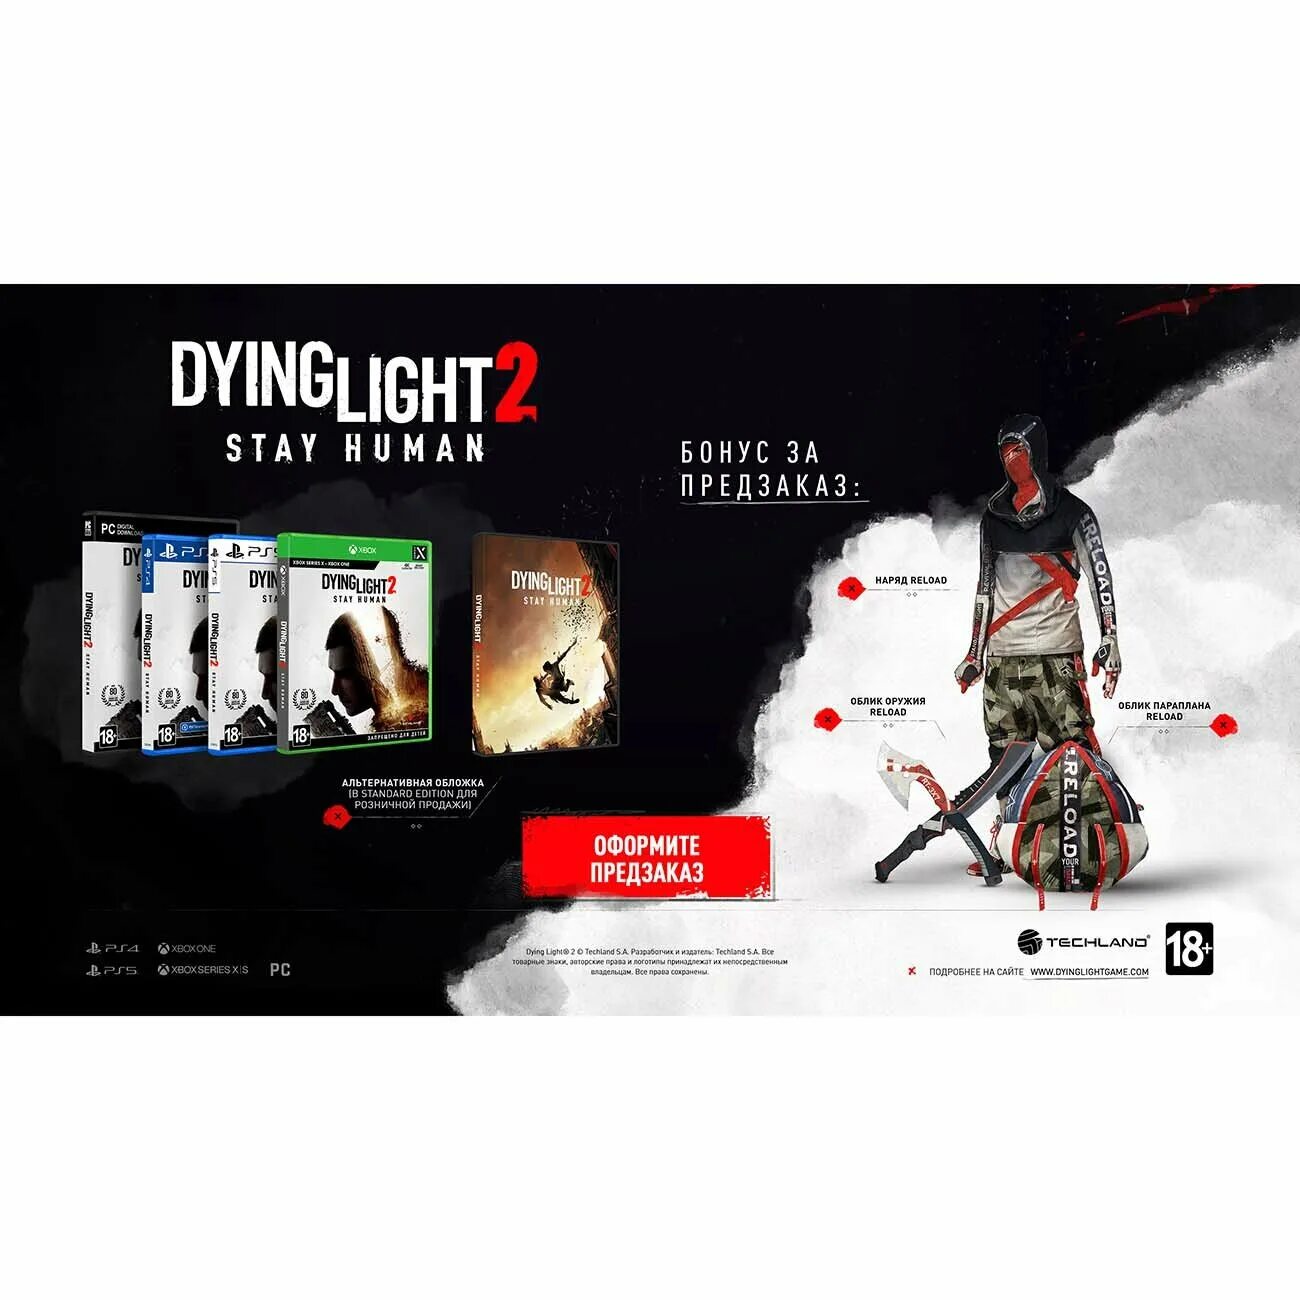 Dying light 2 reloaded edition купить. Dying Light 2 коллекционное издание предзаказ. Дайн Лайт 2 коллекционное издание. Dying Light 2 коллекционное издание. Коллекционки Dying Light 2: stay Human.